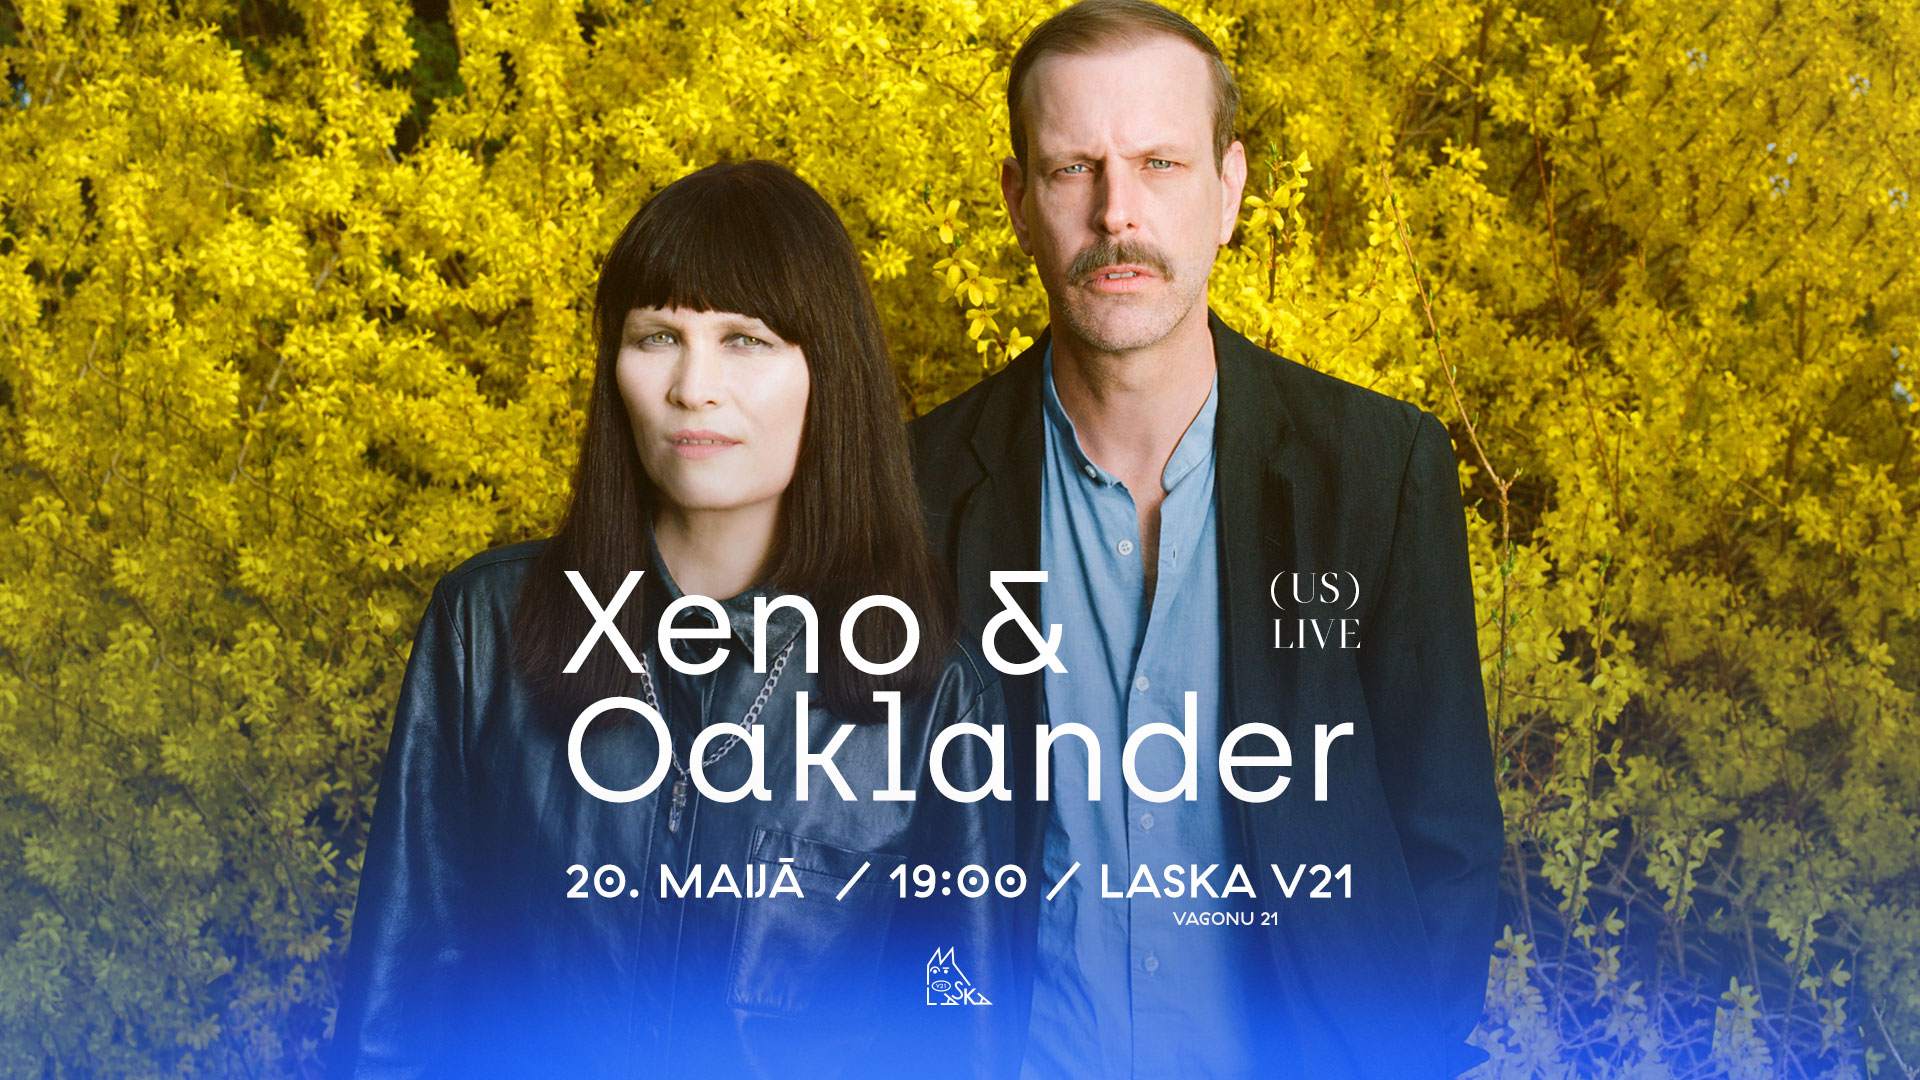 Xeno & Oaklander (US) - LIVE - Página frontal